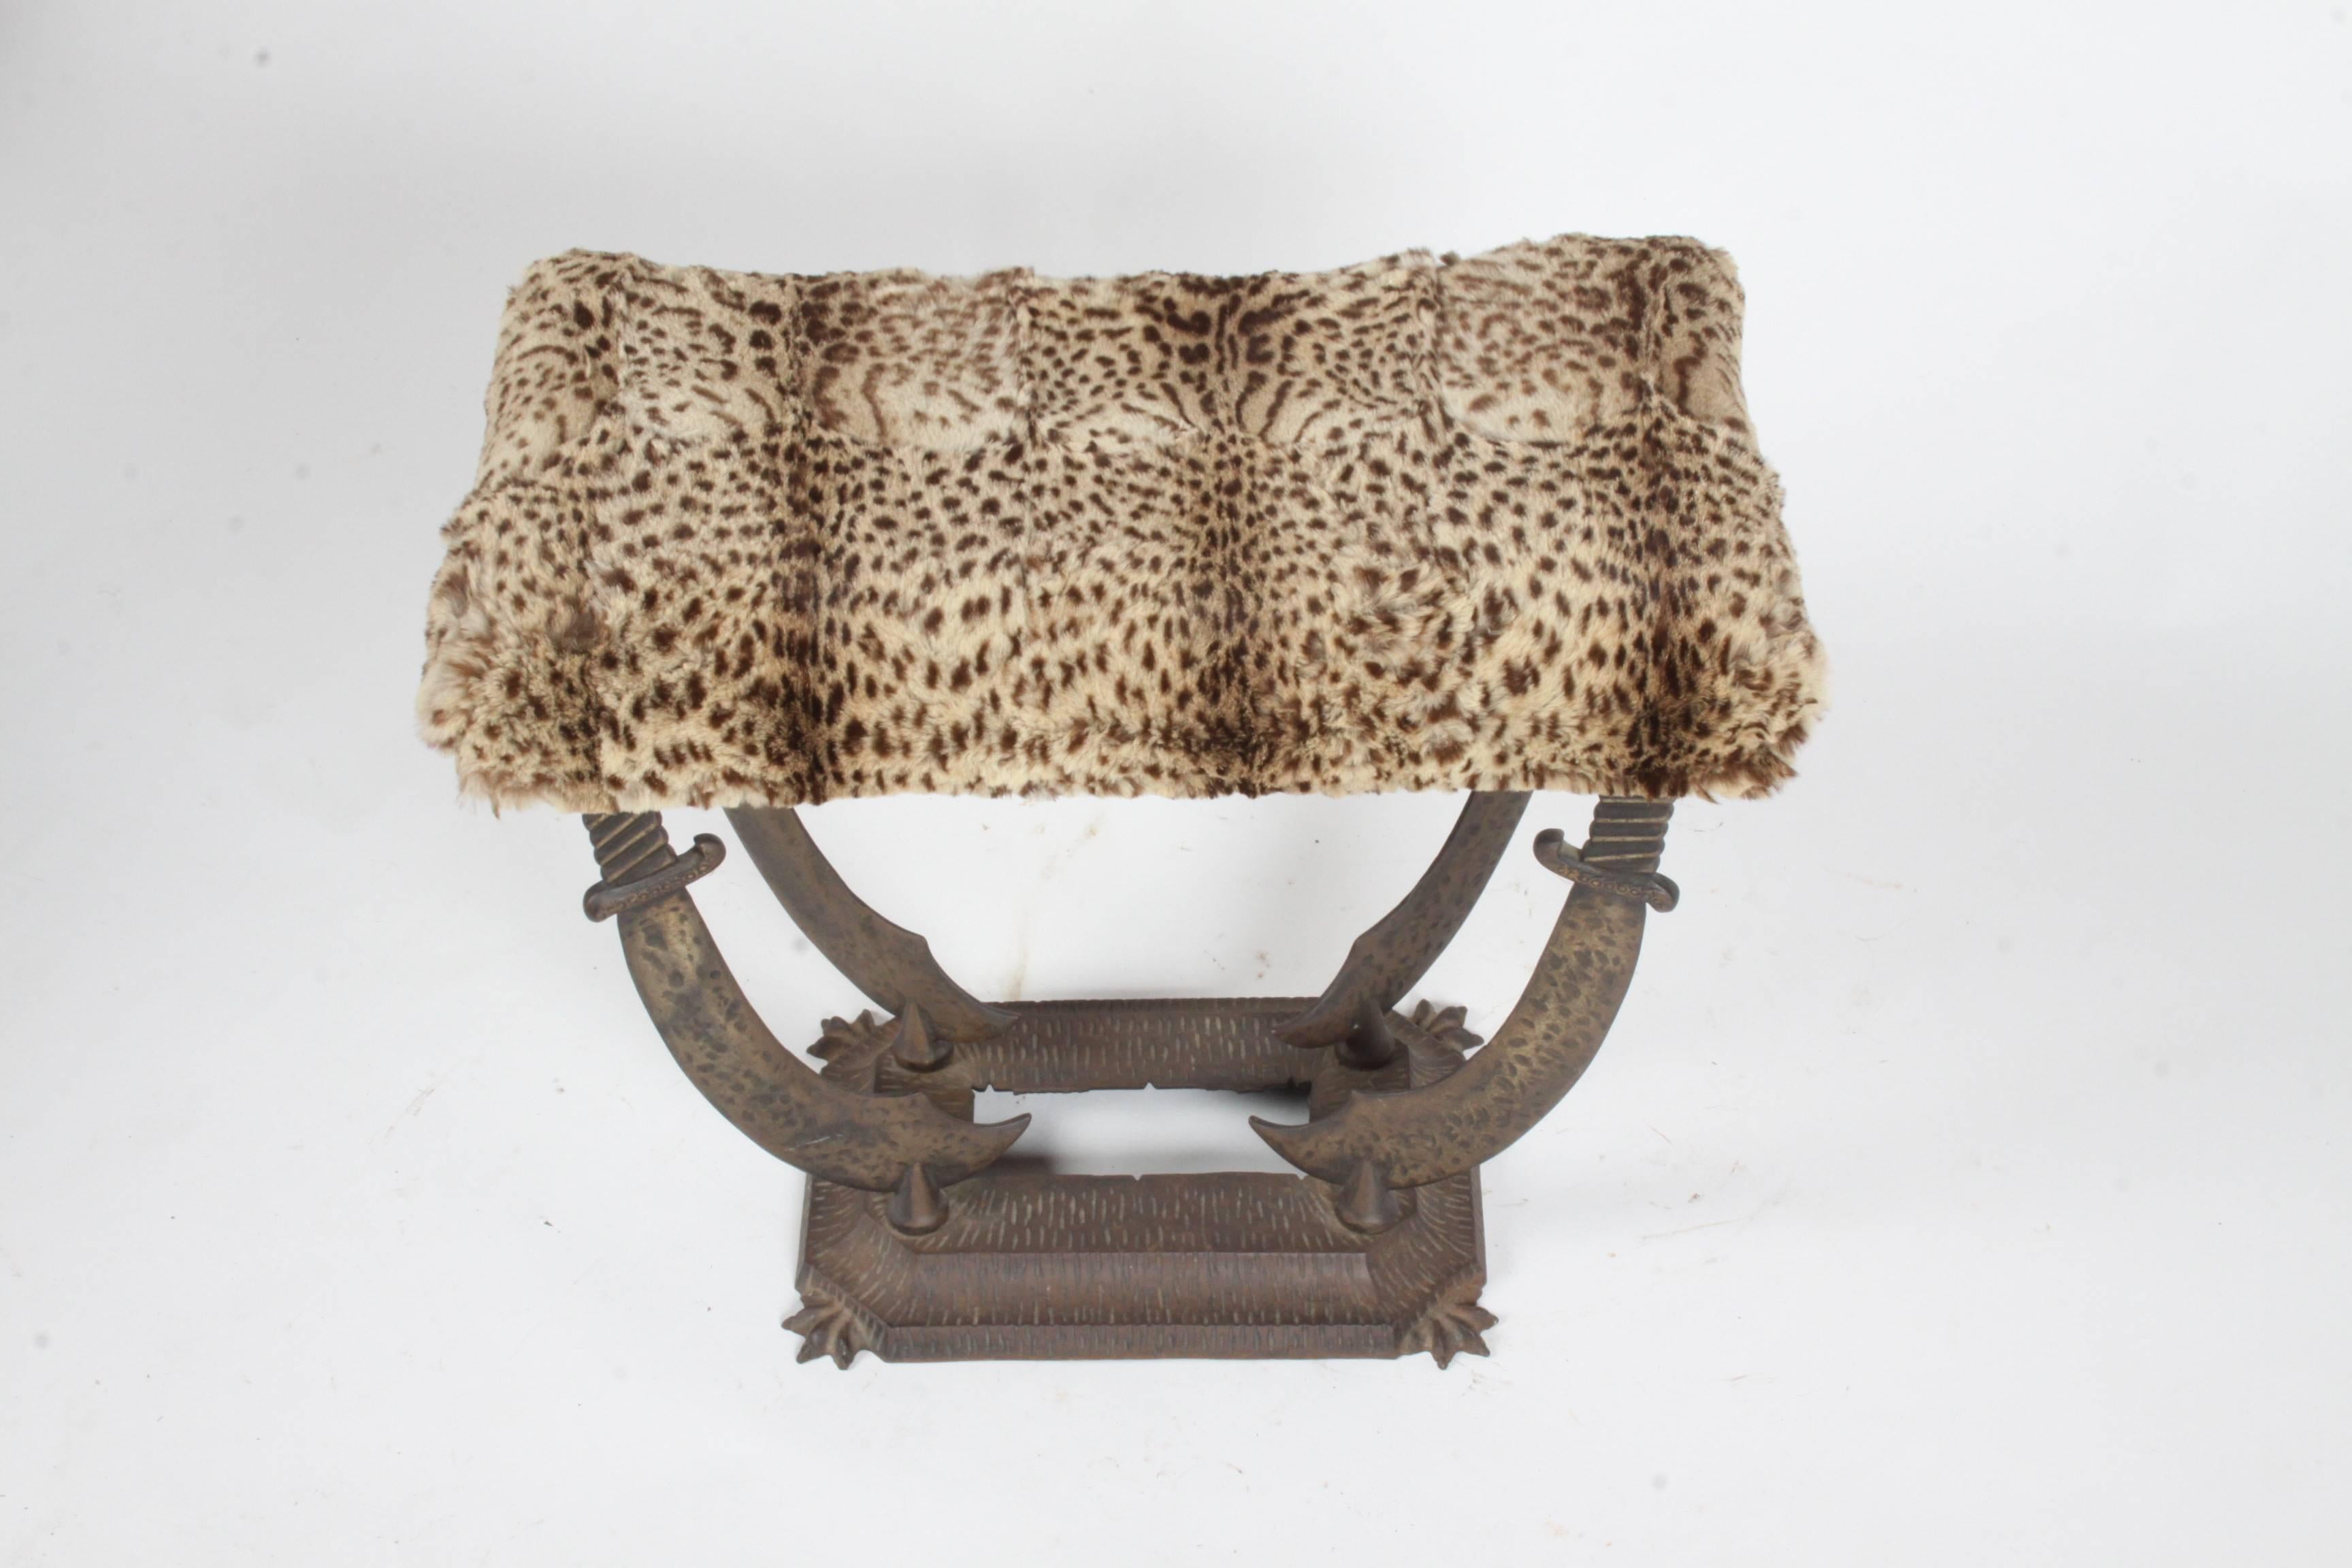 cast van leopard skin